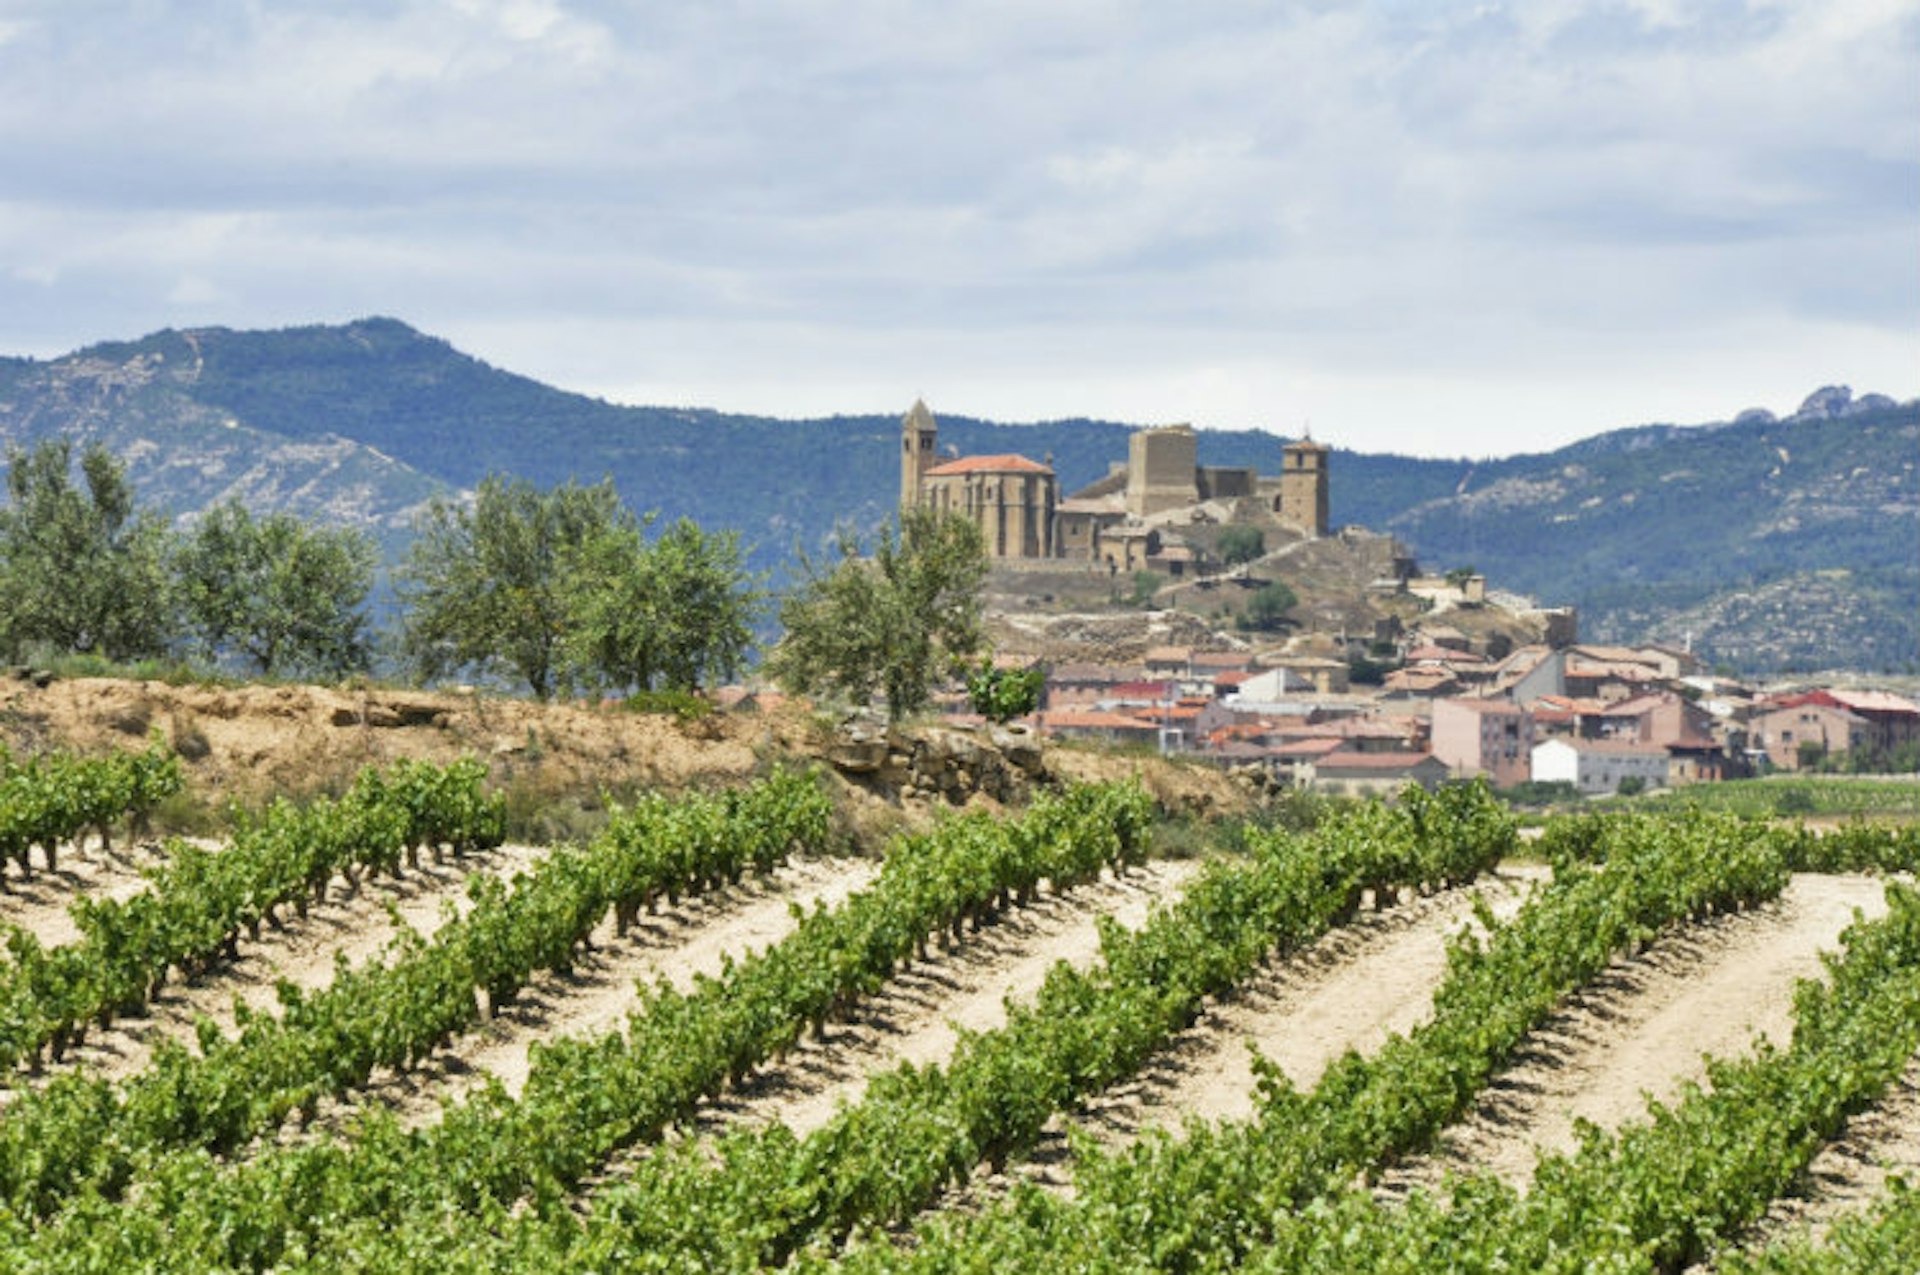 Vineyards in La Rioja, Spain